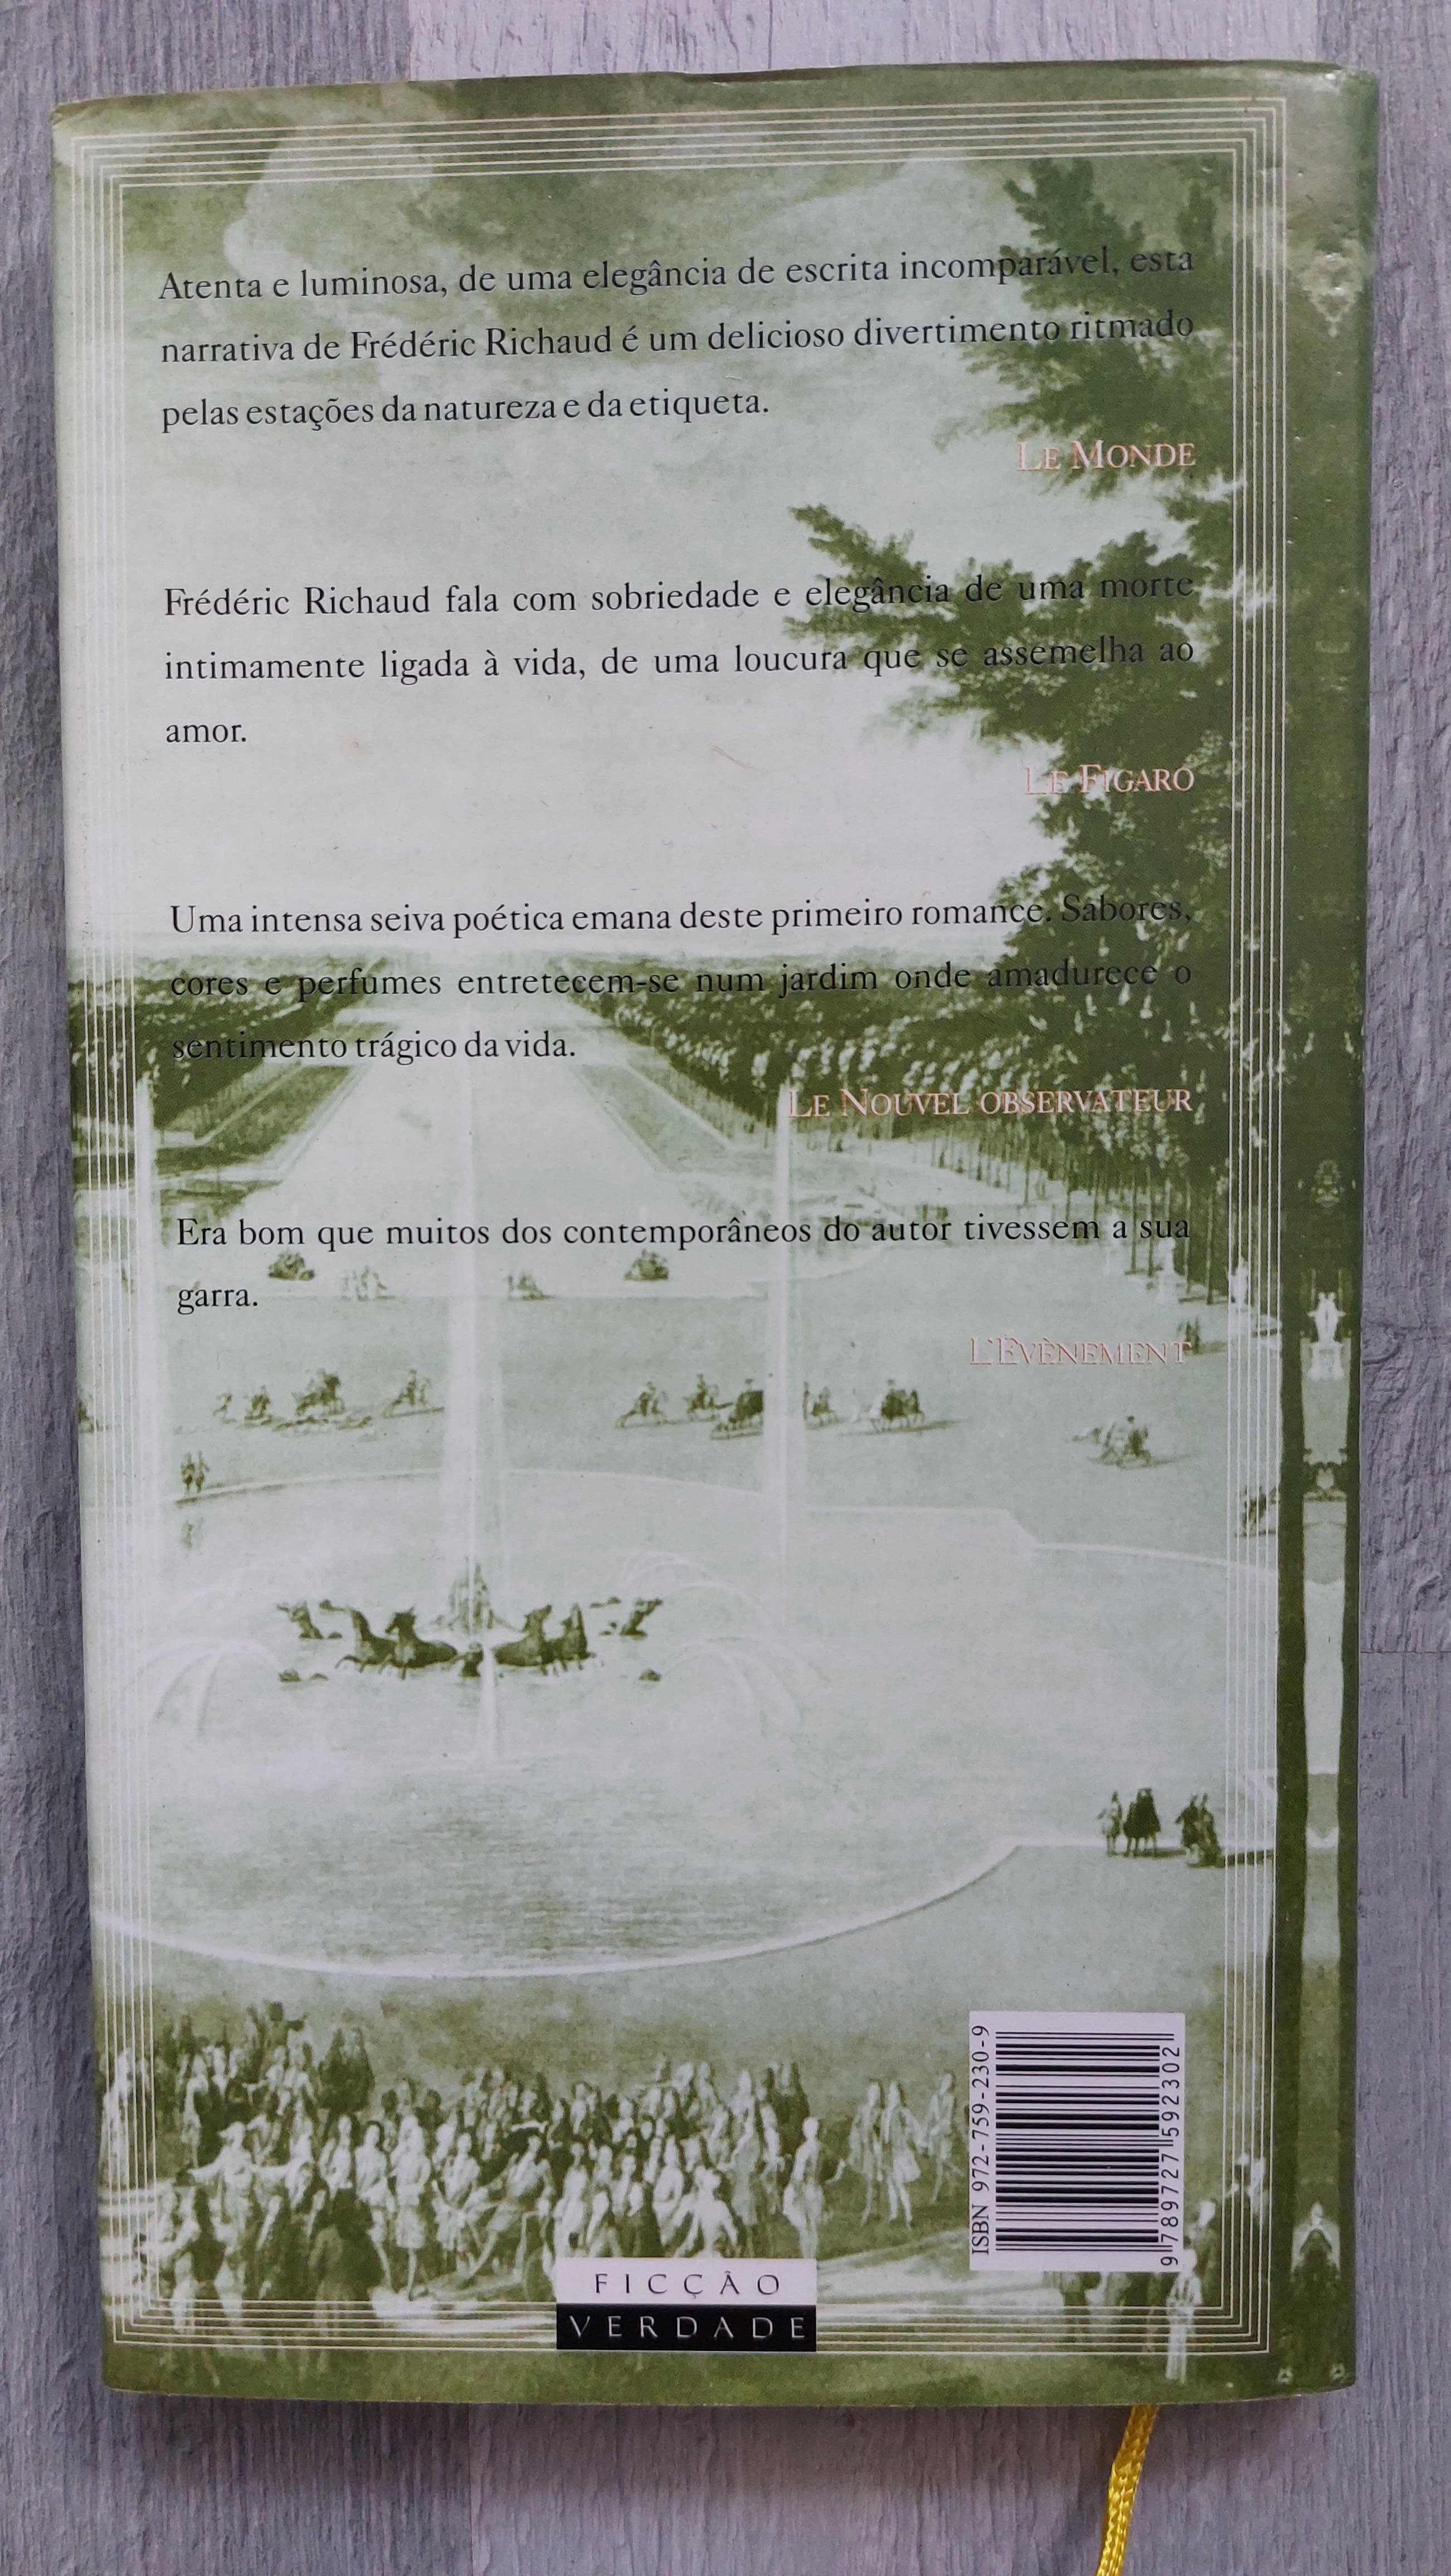 Livro "O Jardineiro do Rei" de Frédéric Richaud (portes incluídos)